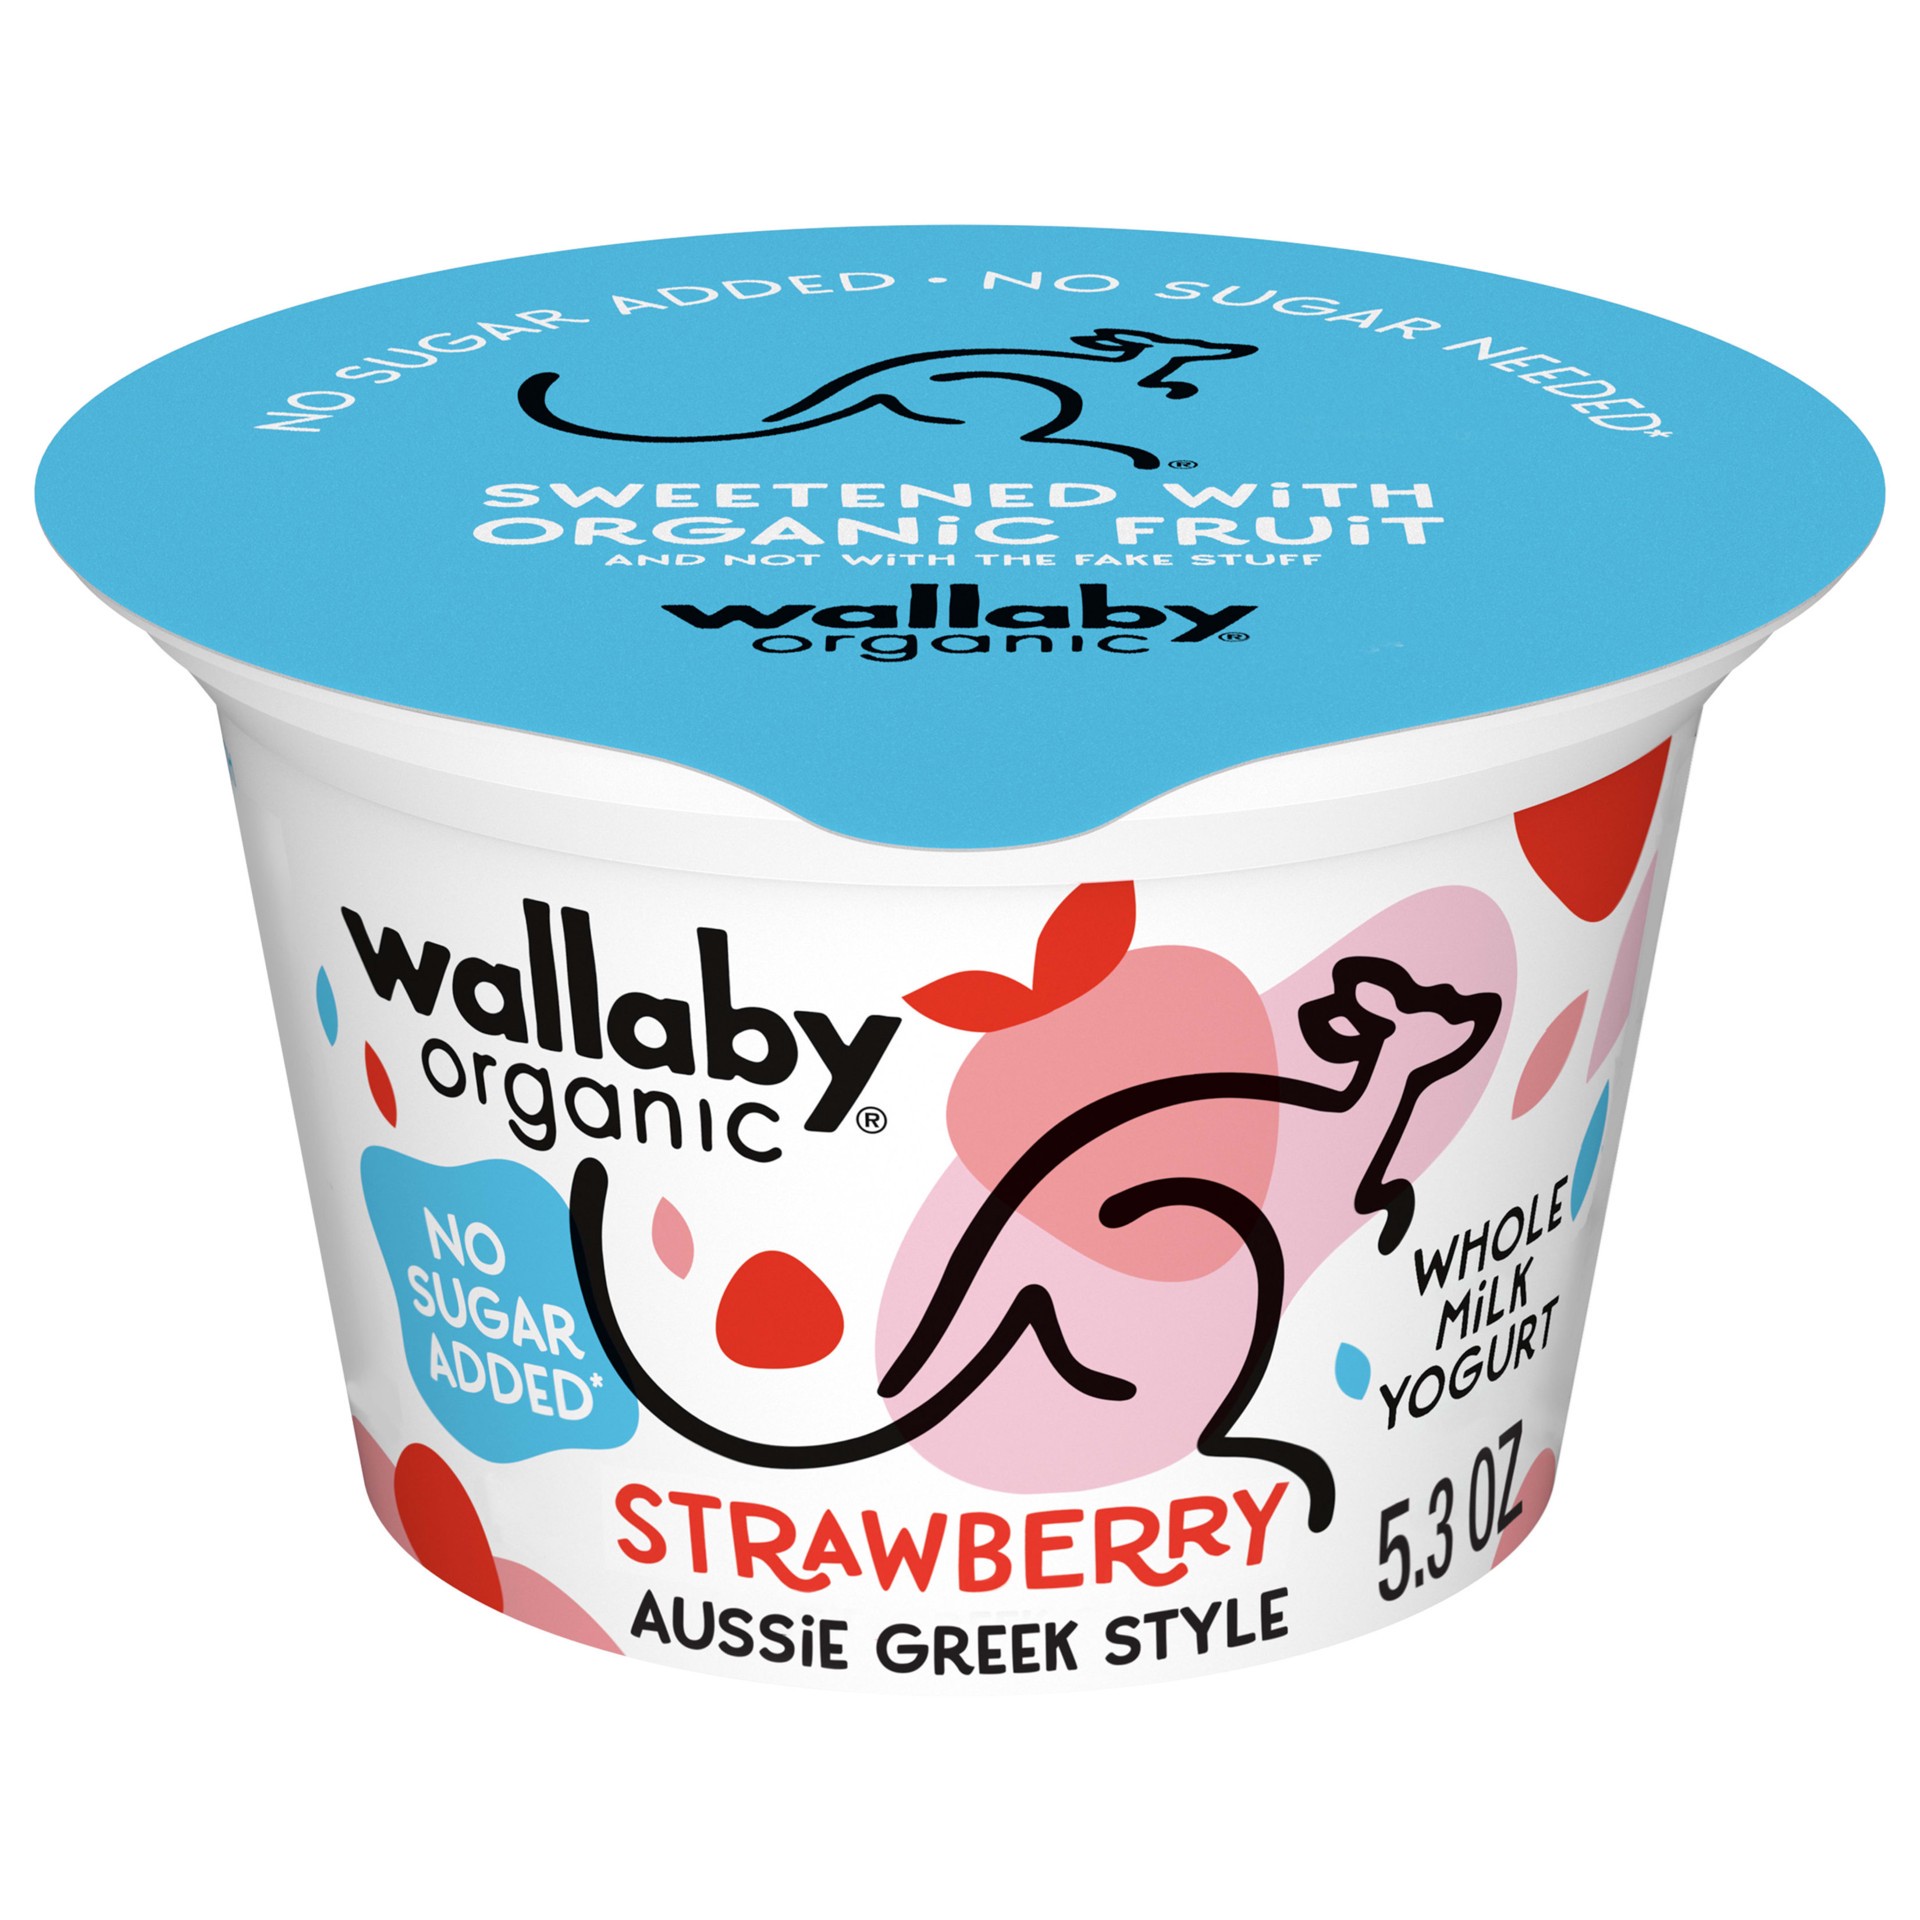 slide 1 of 5, Wallaby Organic Aussie Greek Yogurt, No Sugar Added, Strawberry, USDA Organic, 5.3 oz. Cup, 5.3 oz